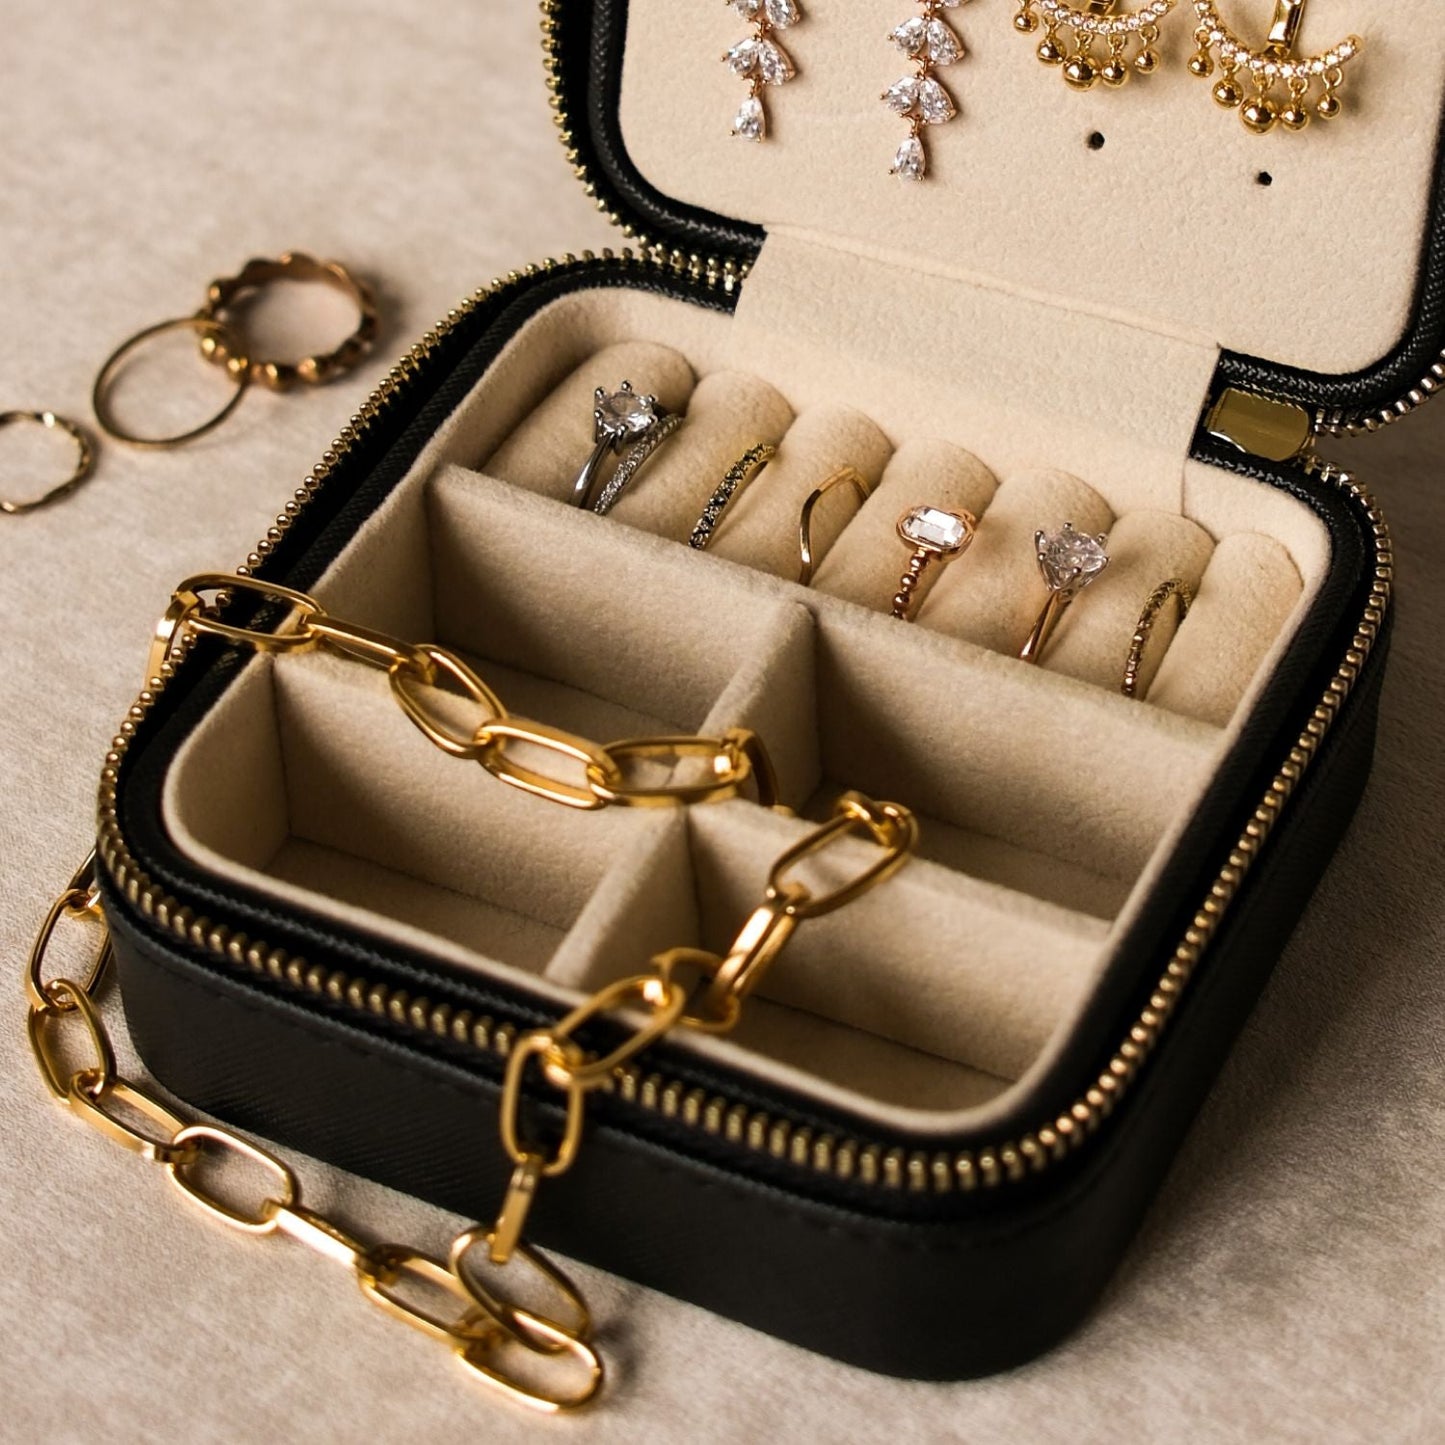 travel jewelry case - Akuasonic